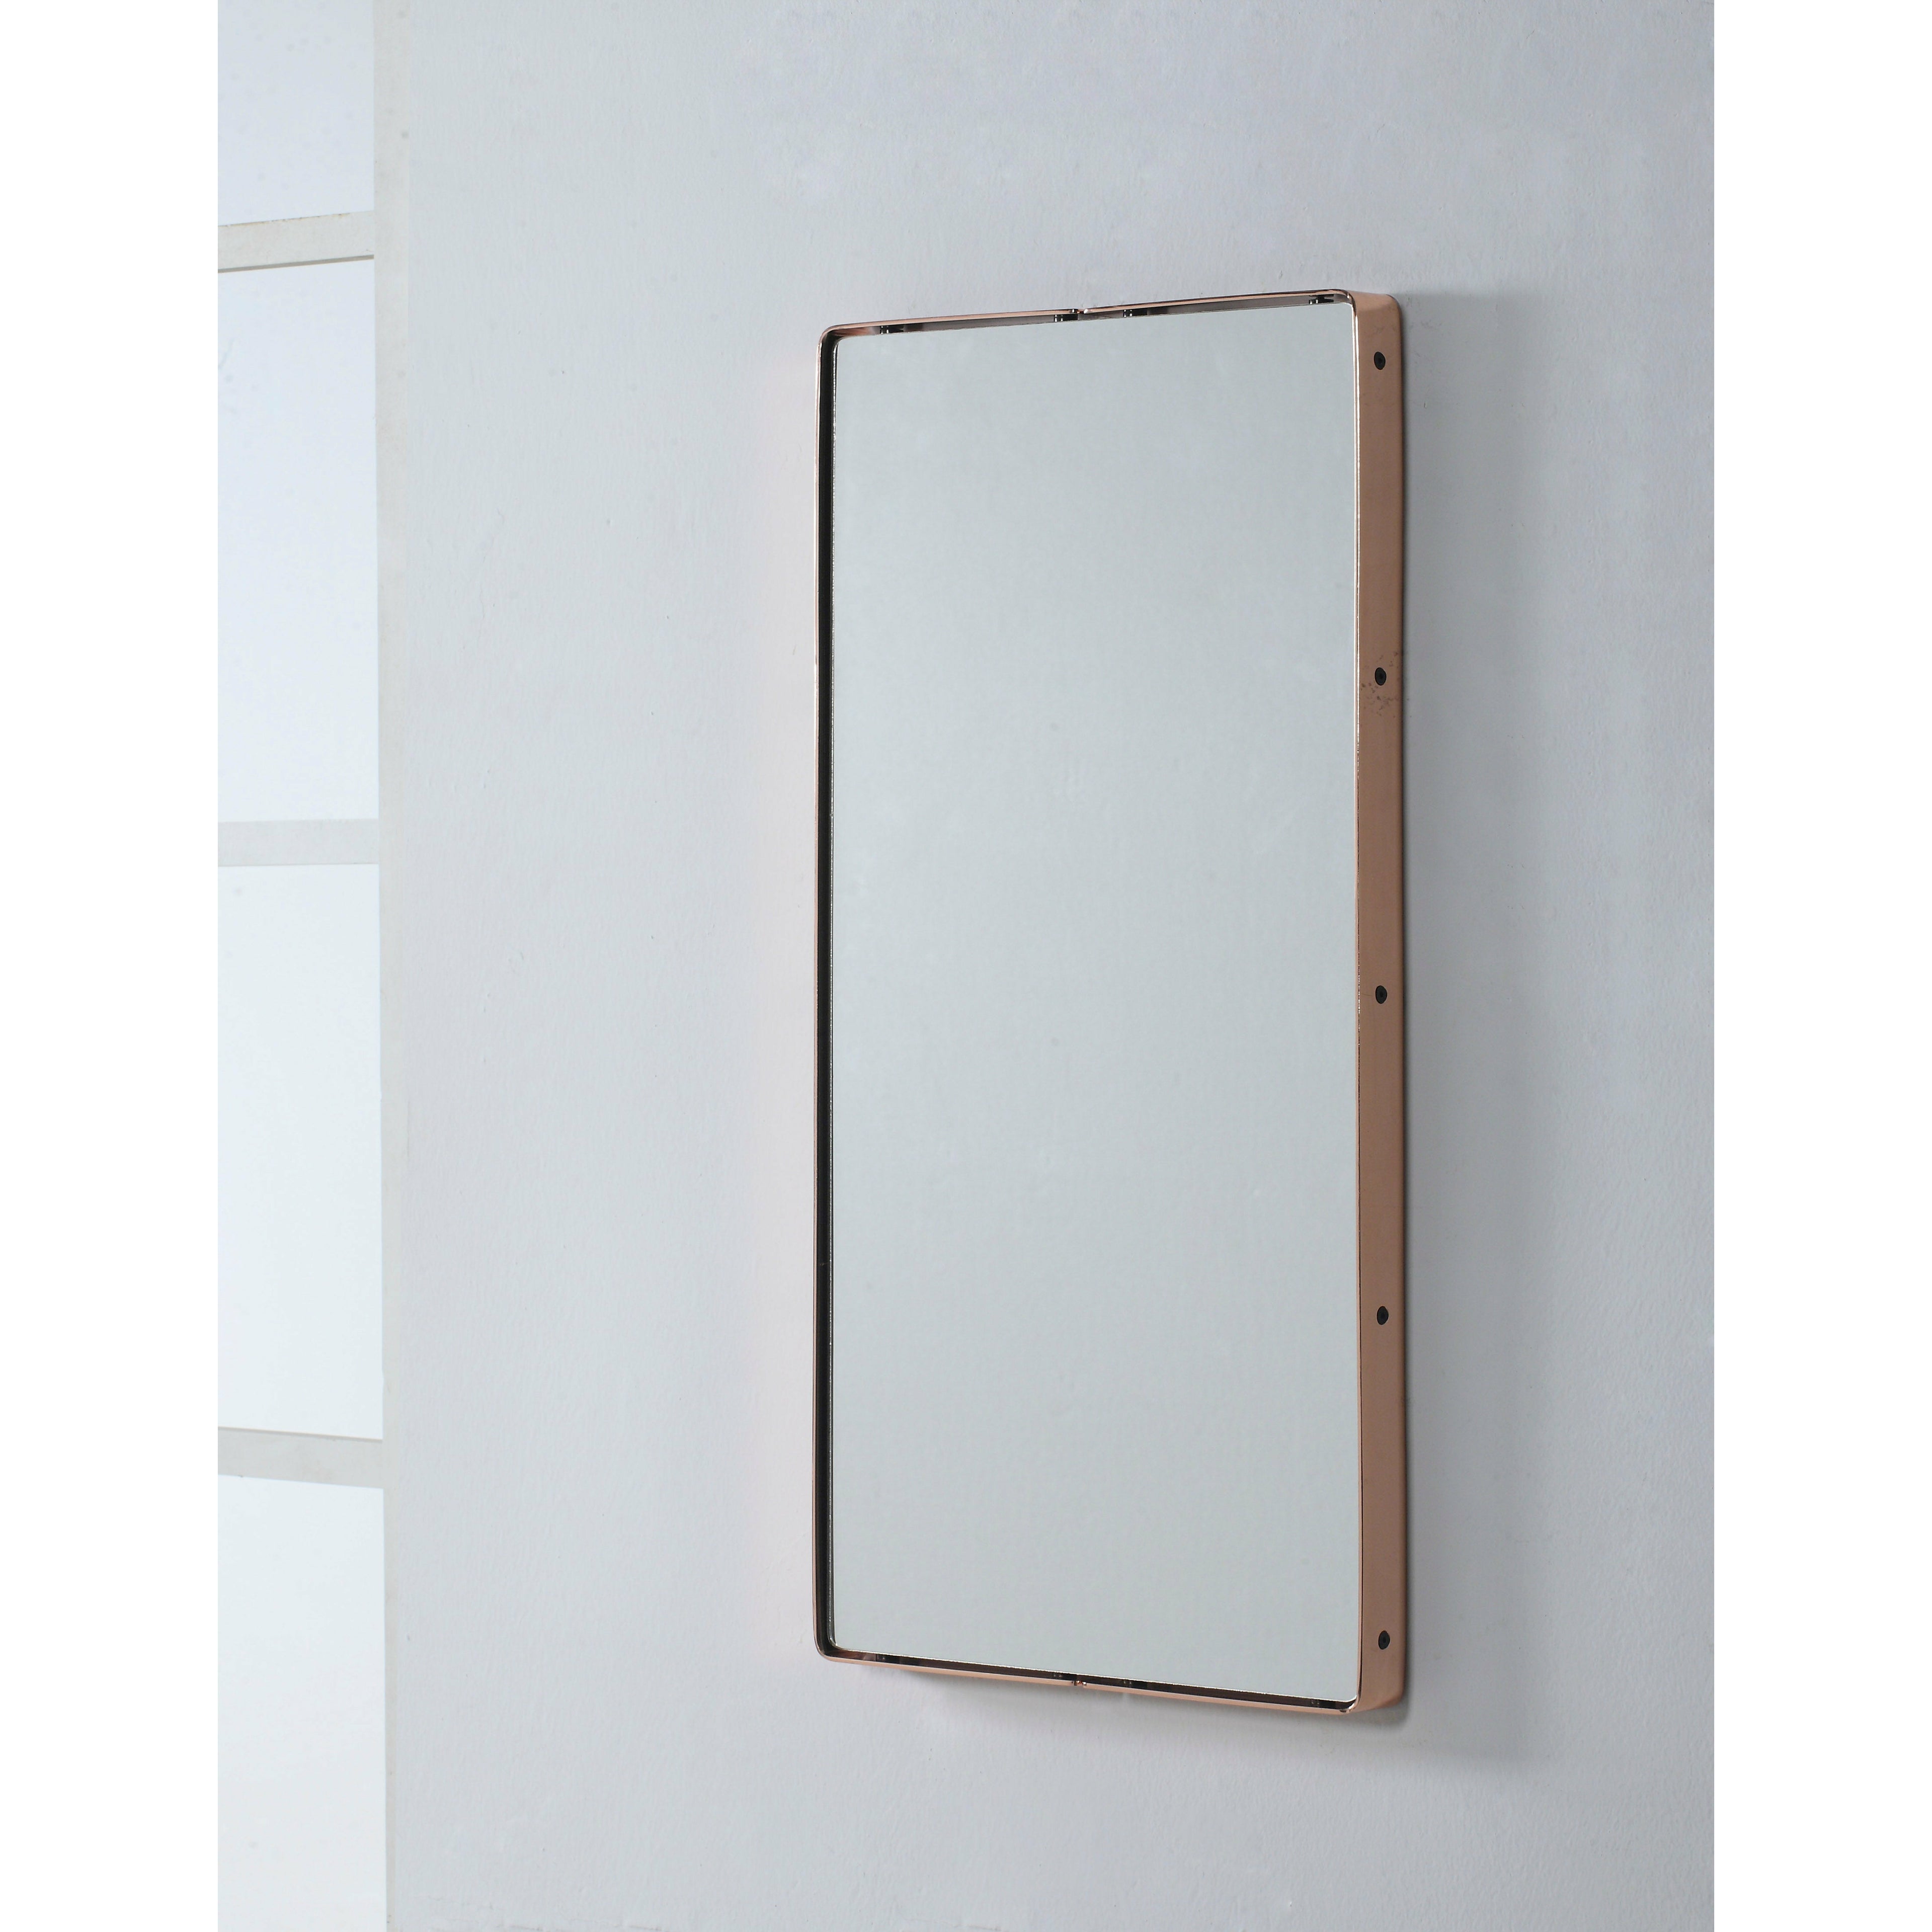 Camino - Bautista 2 spegel - 40x80 cm